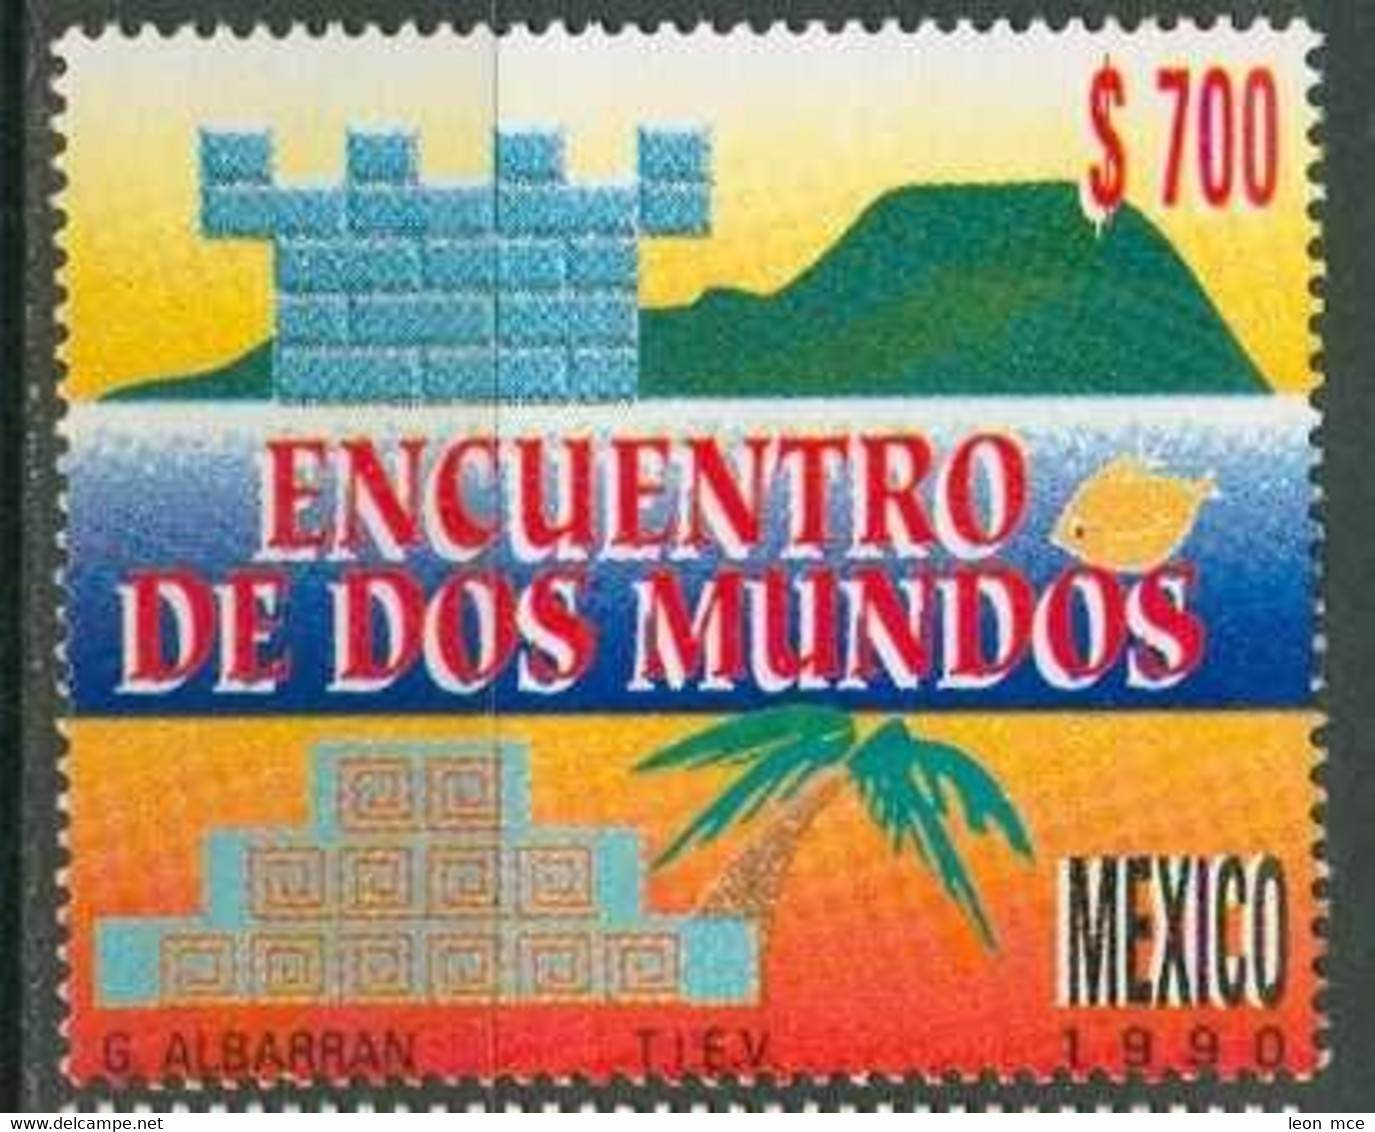 1990 MÉXICO ENCUENTRO DE DOS MUNDOS Sc. 1668 MNH, Discovery Of America - Mexique